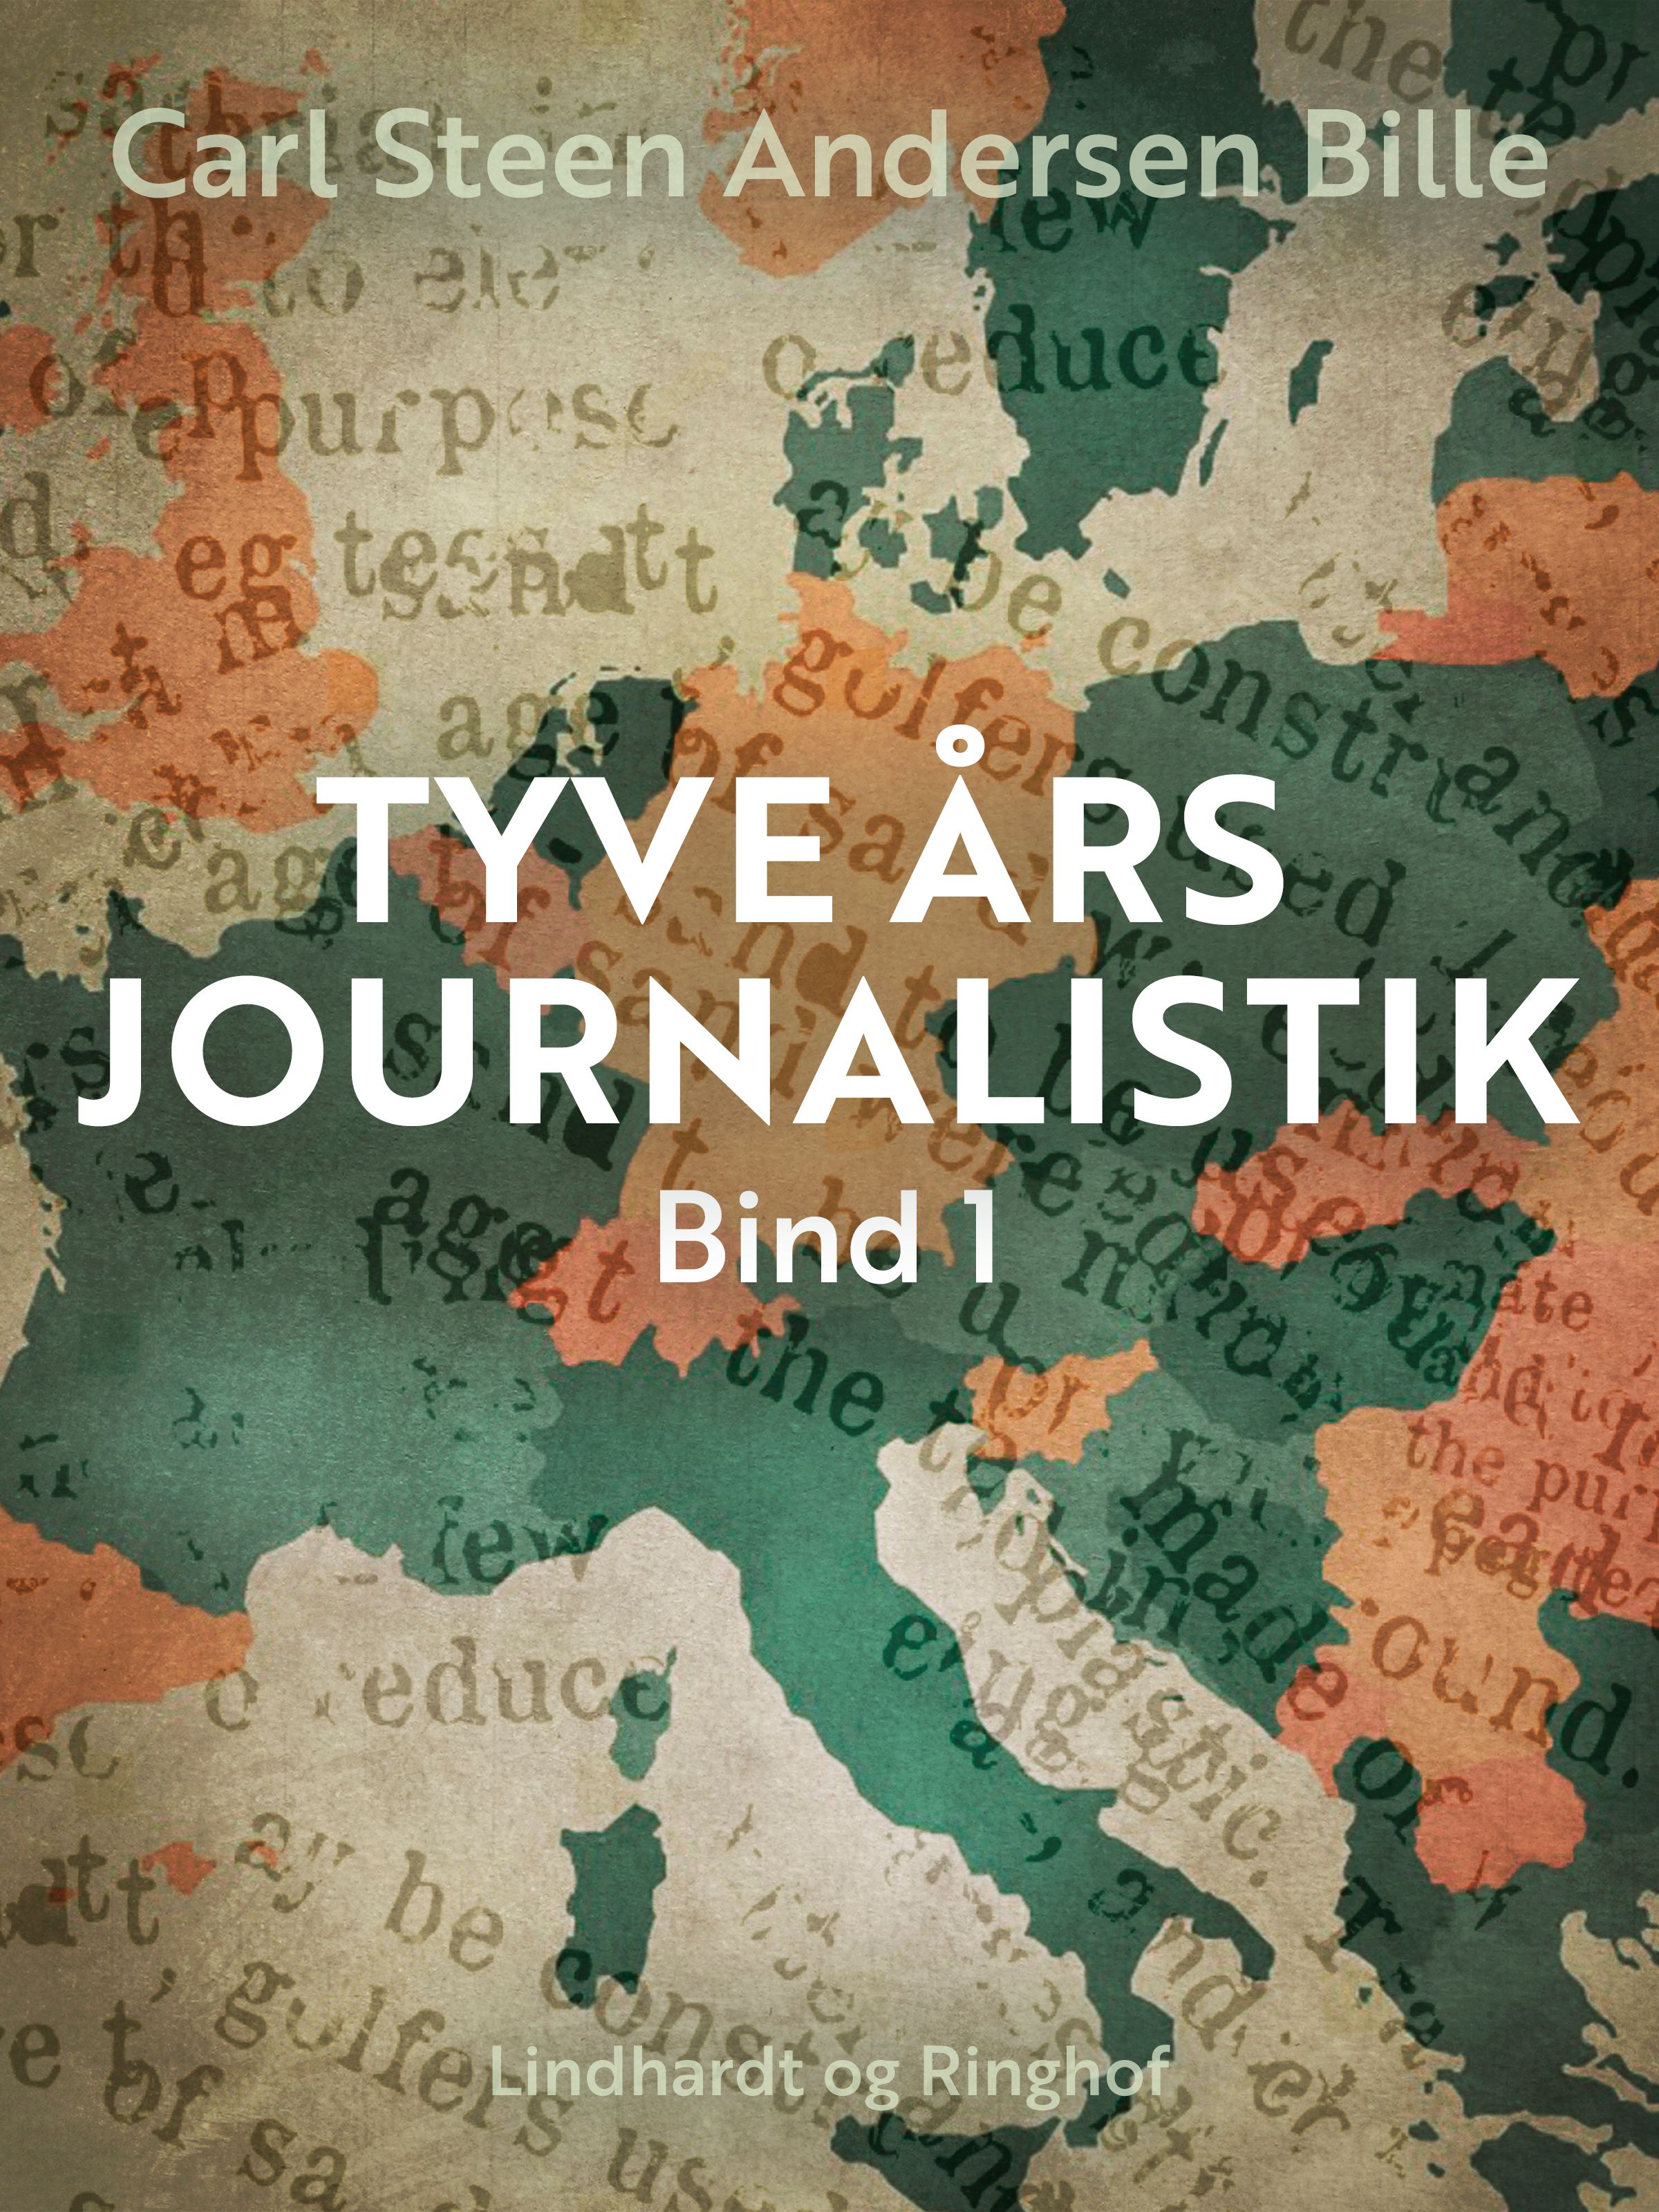 Tyve års journalistik. Bind 1, eBook by Carl Steen Andersen Bille